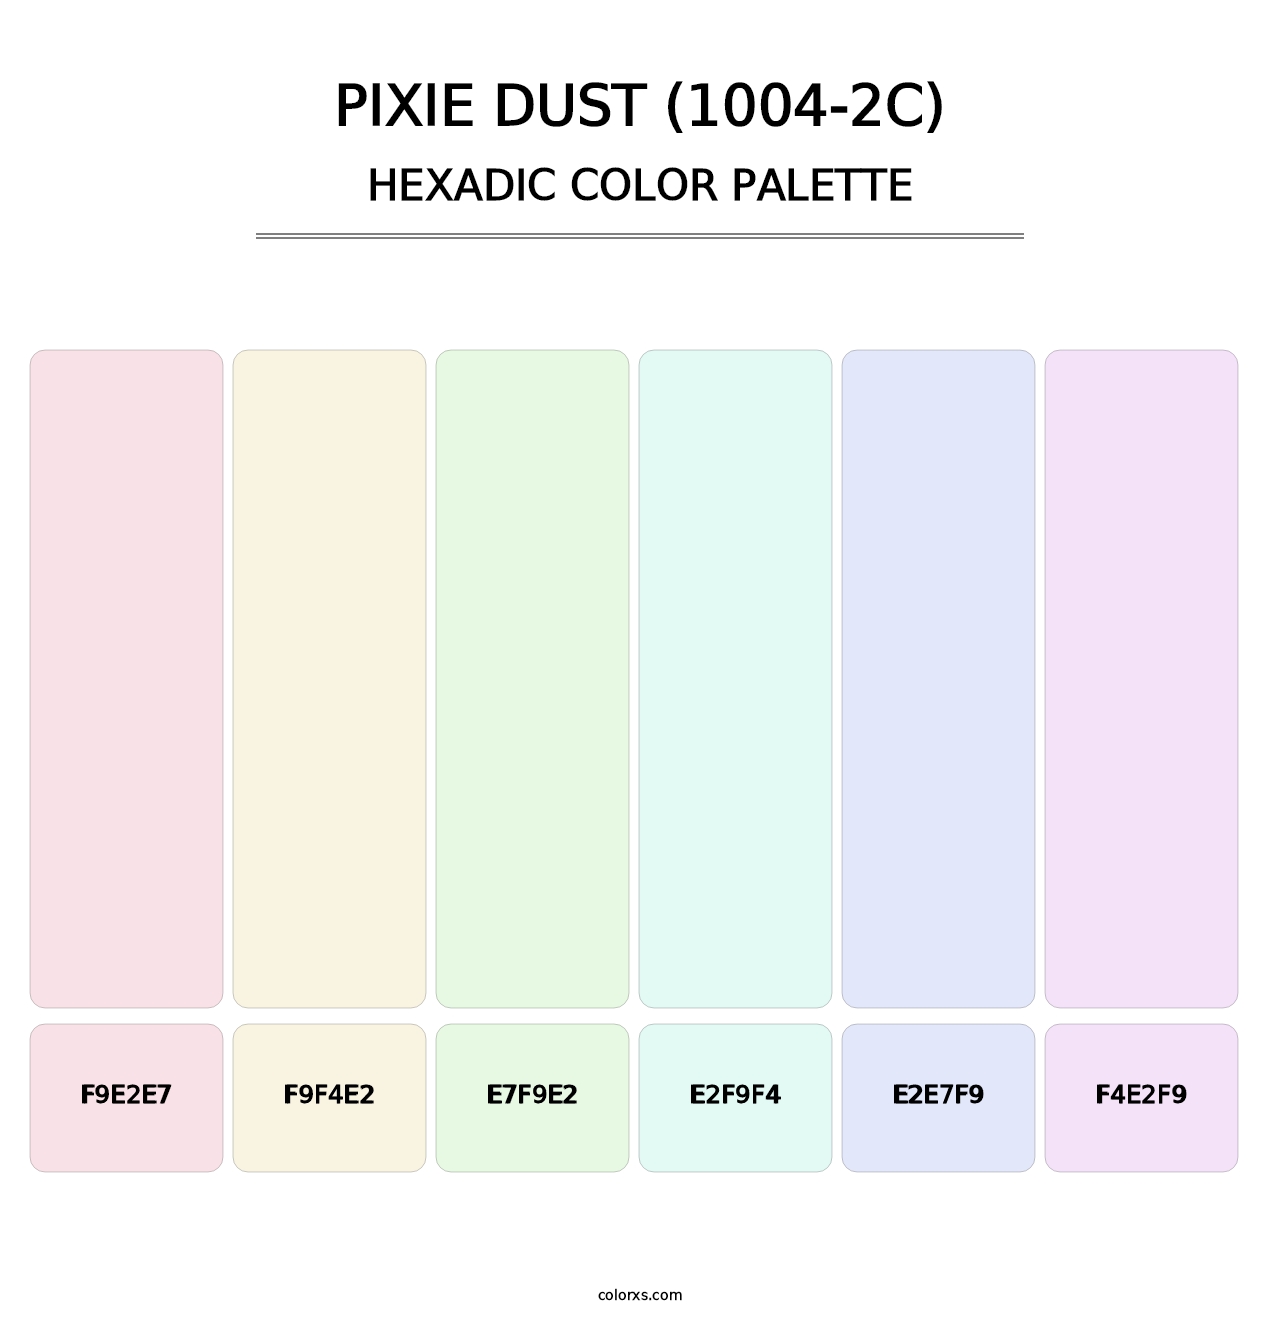 Pixie Dust (1004-2C) - Hexadic Color Palette